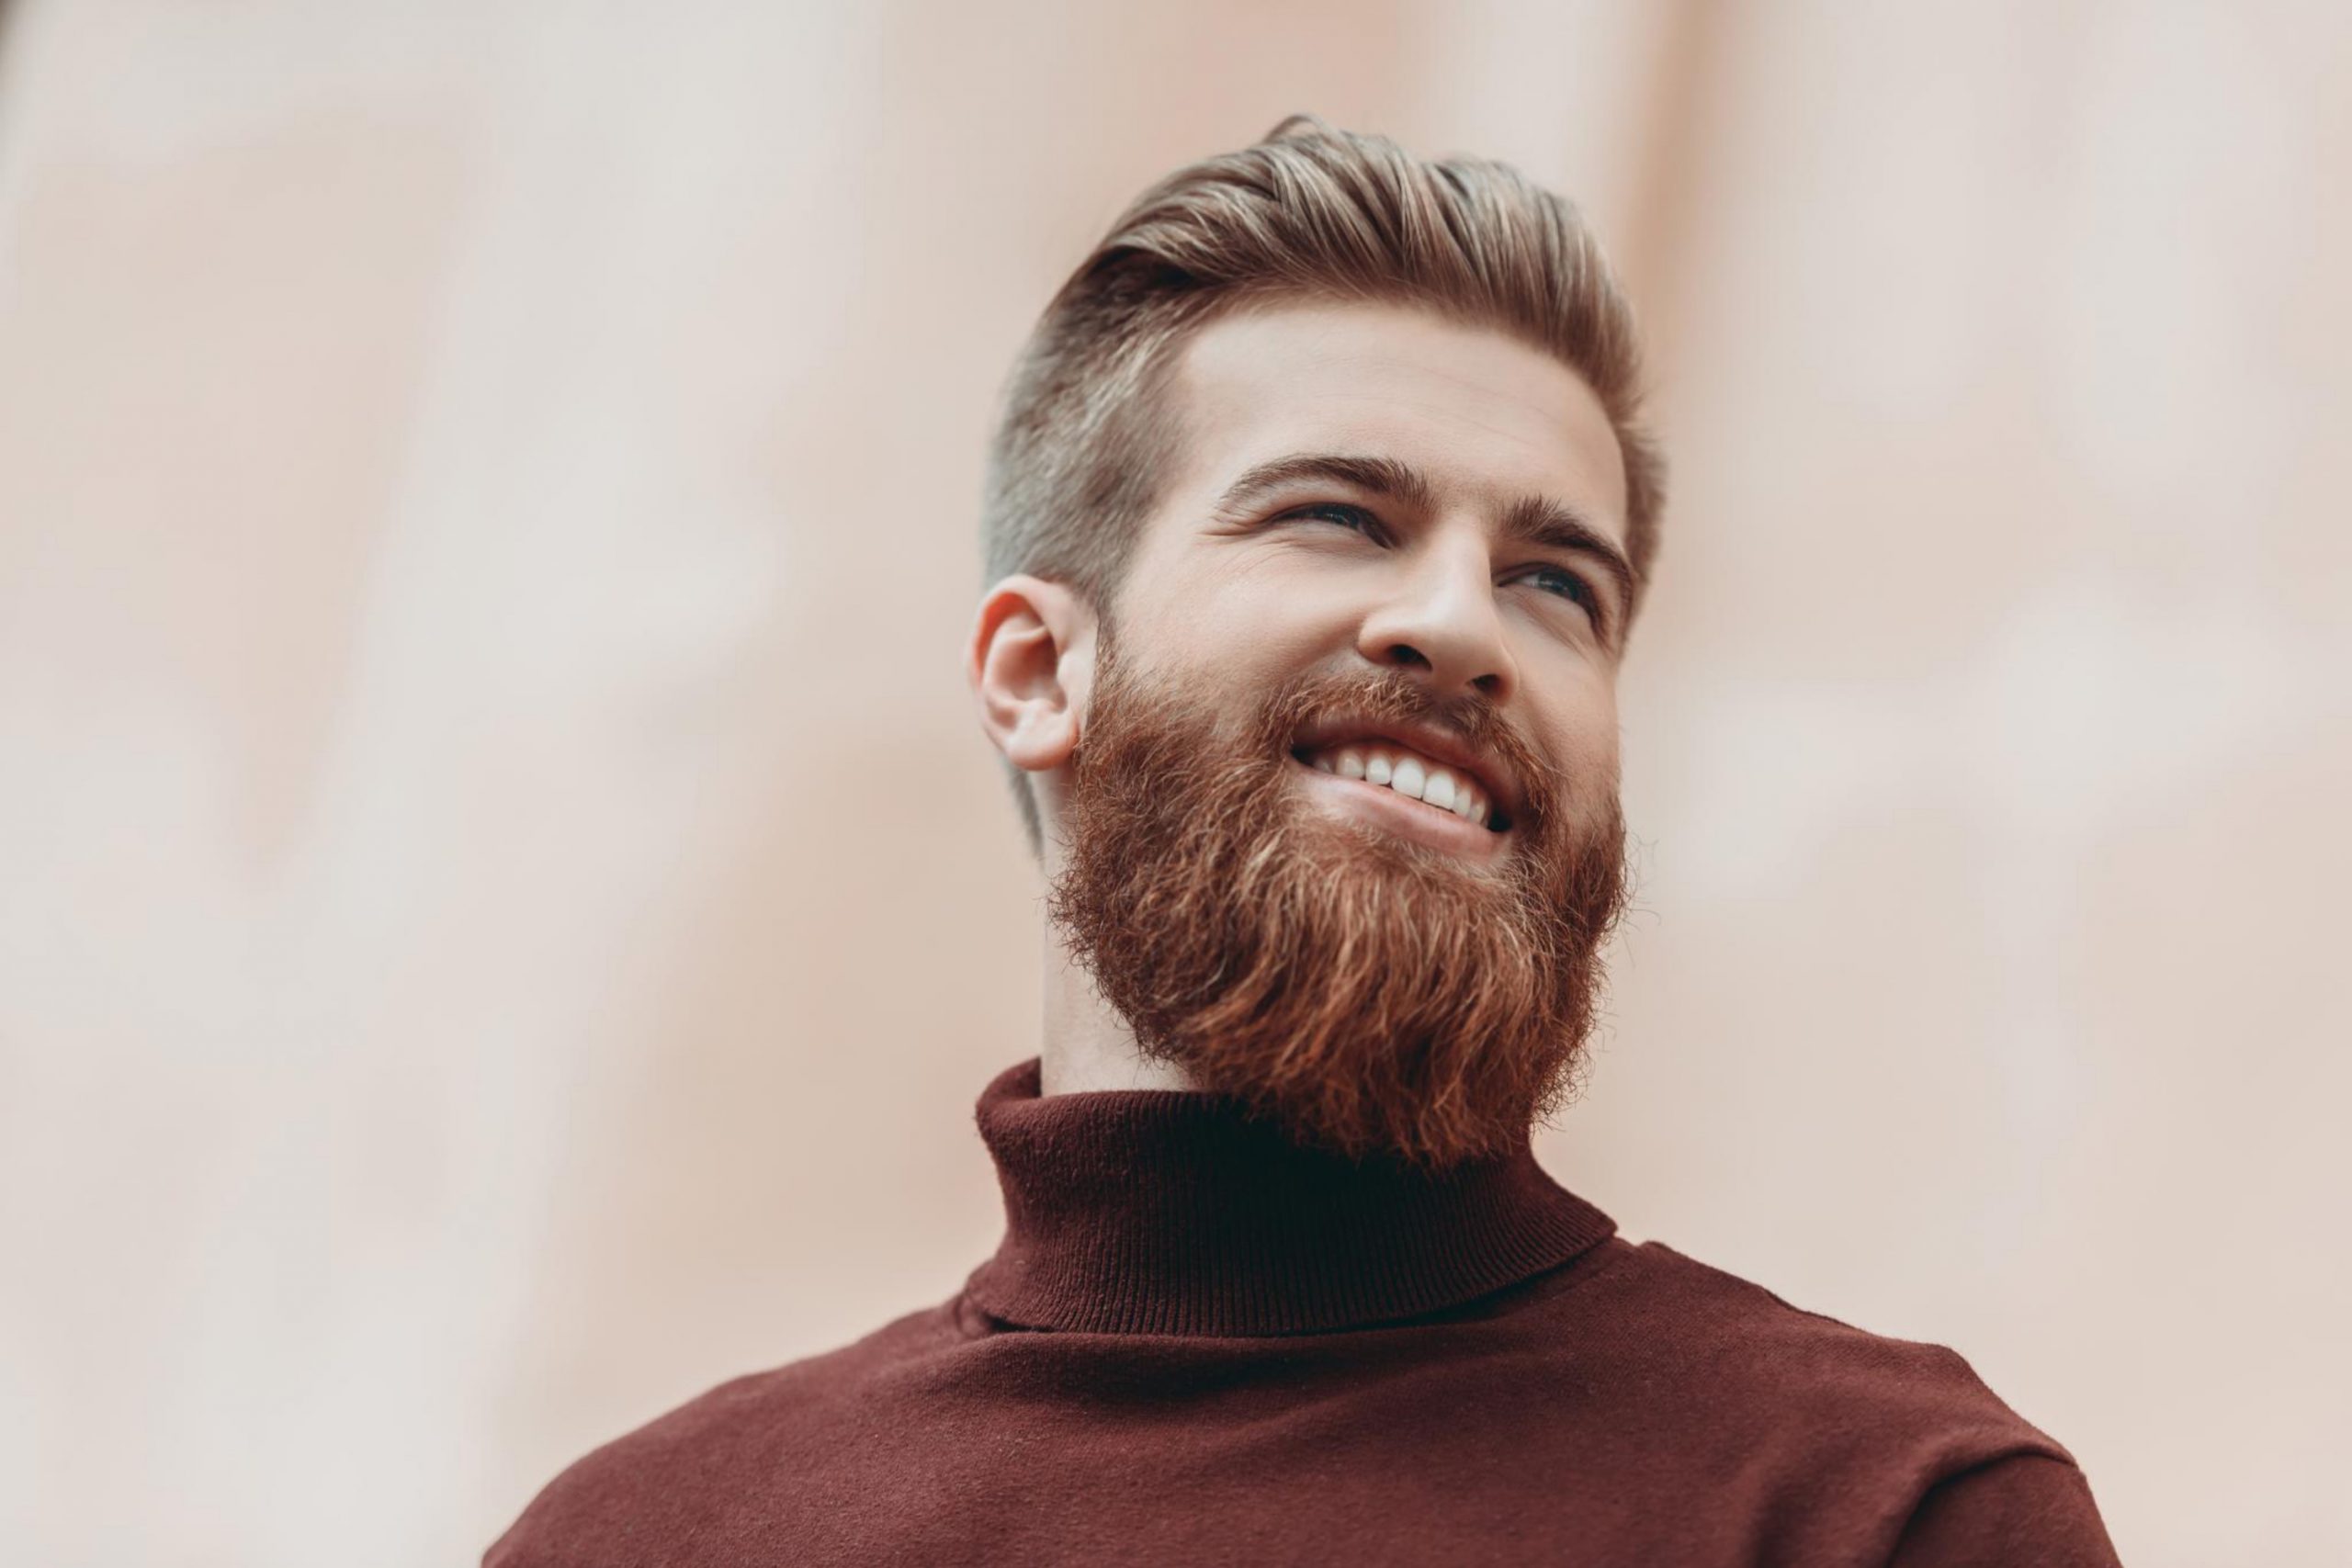 Get a beard trim every six weeks